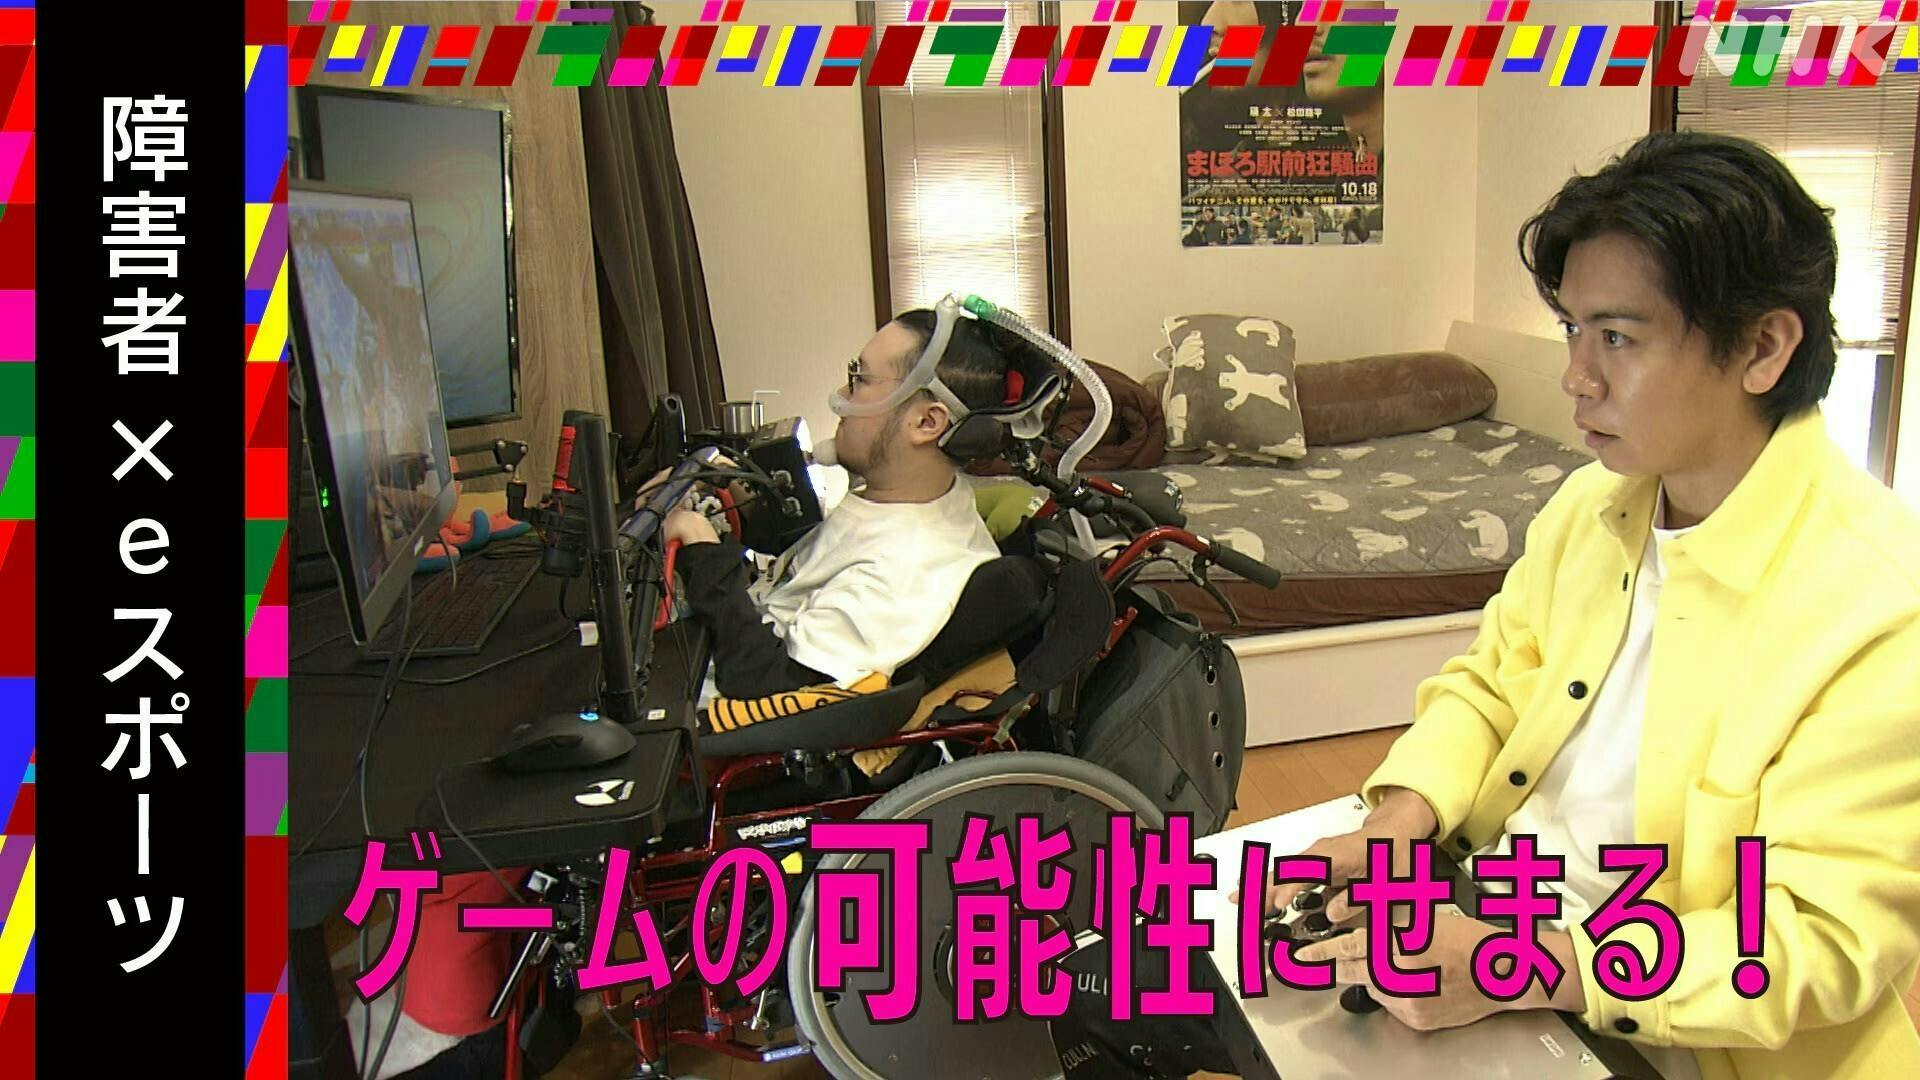 テロップ 障害者×eスポーツ ゲームの可能性に迫る Jeniと野田クリスタルさんが対戦している写真